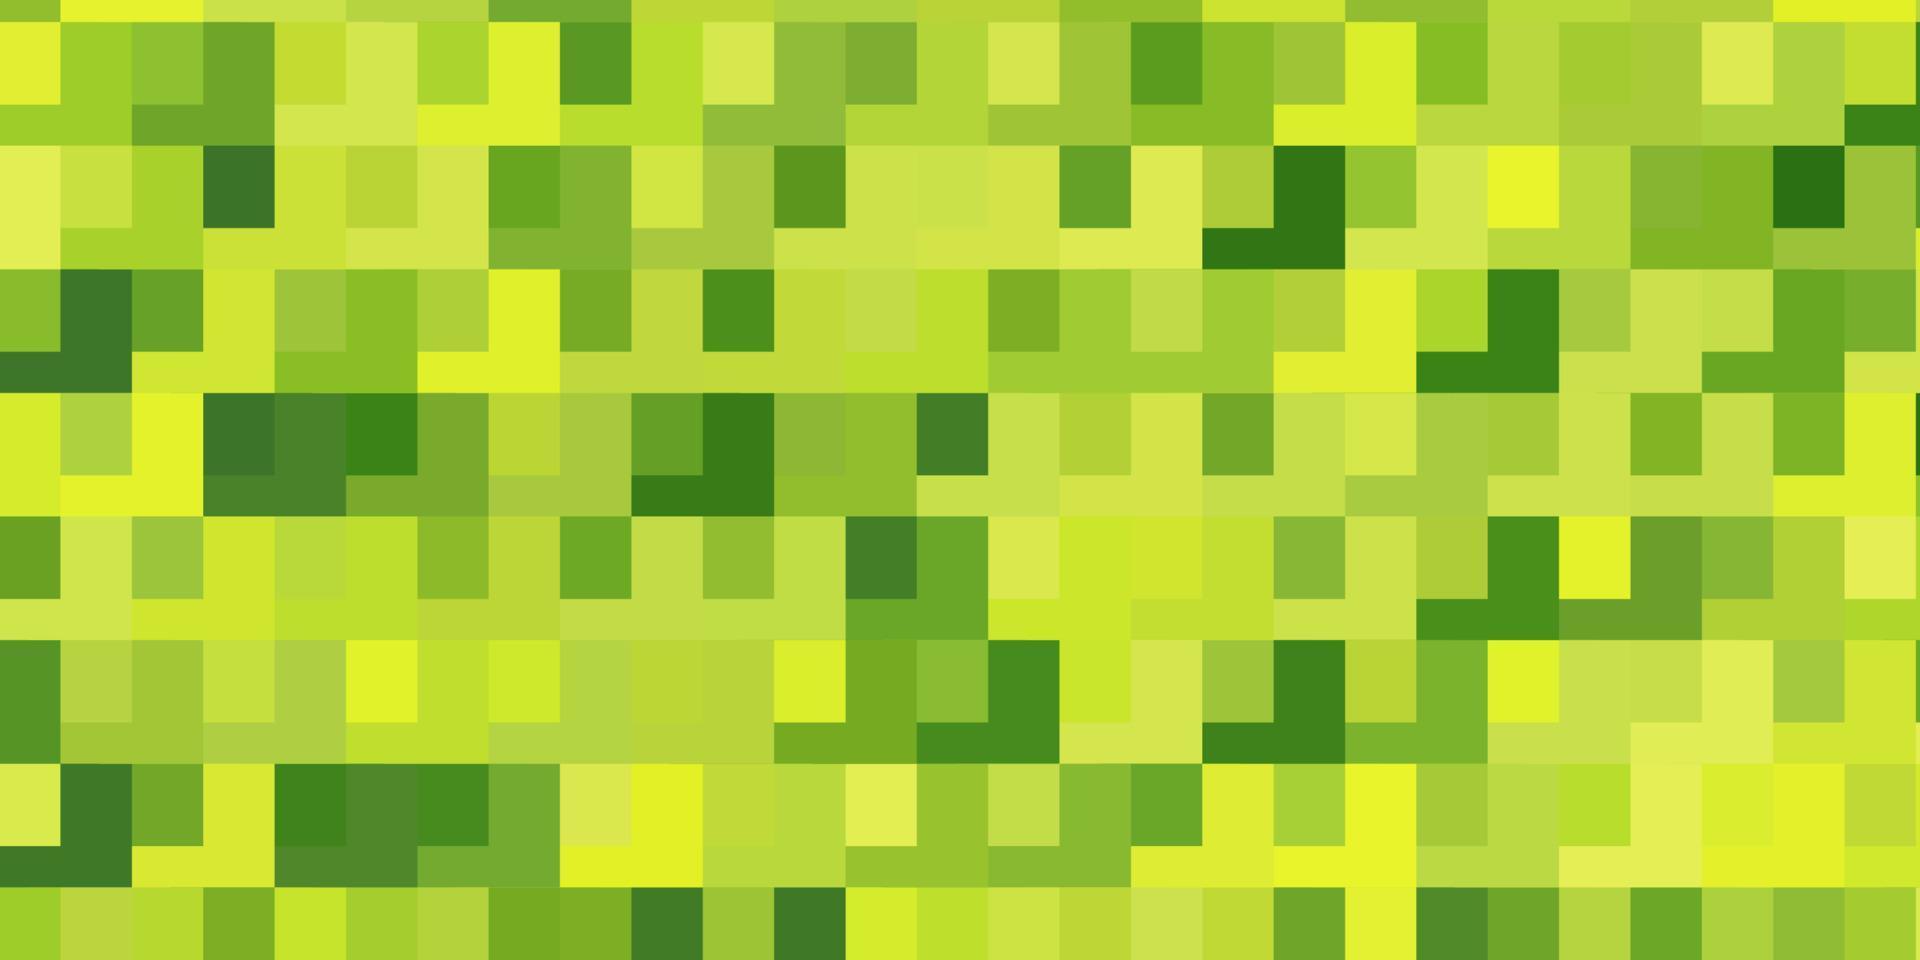 modello vettoriale verde chiaro, giallo in rettangoli.